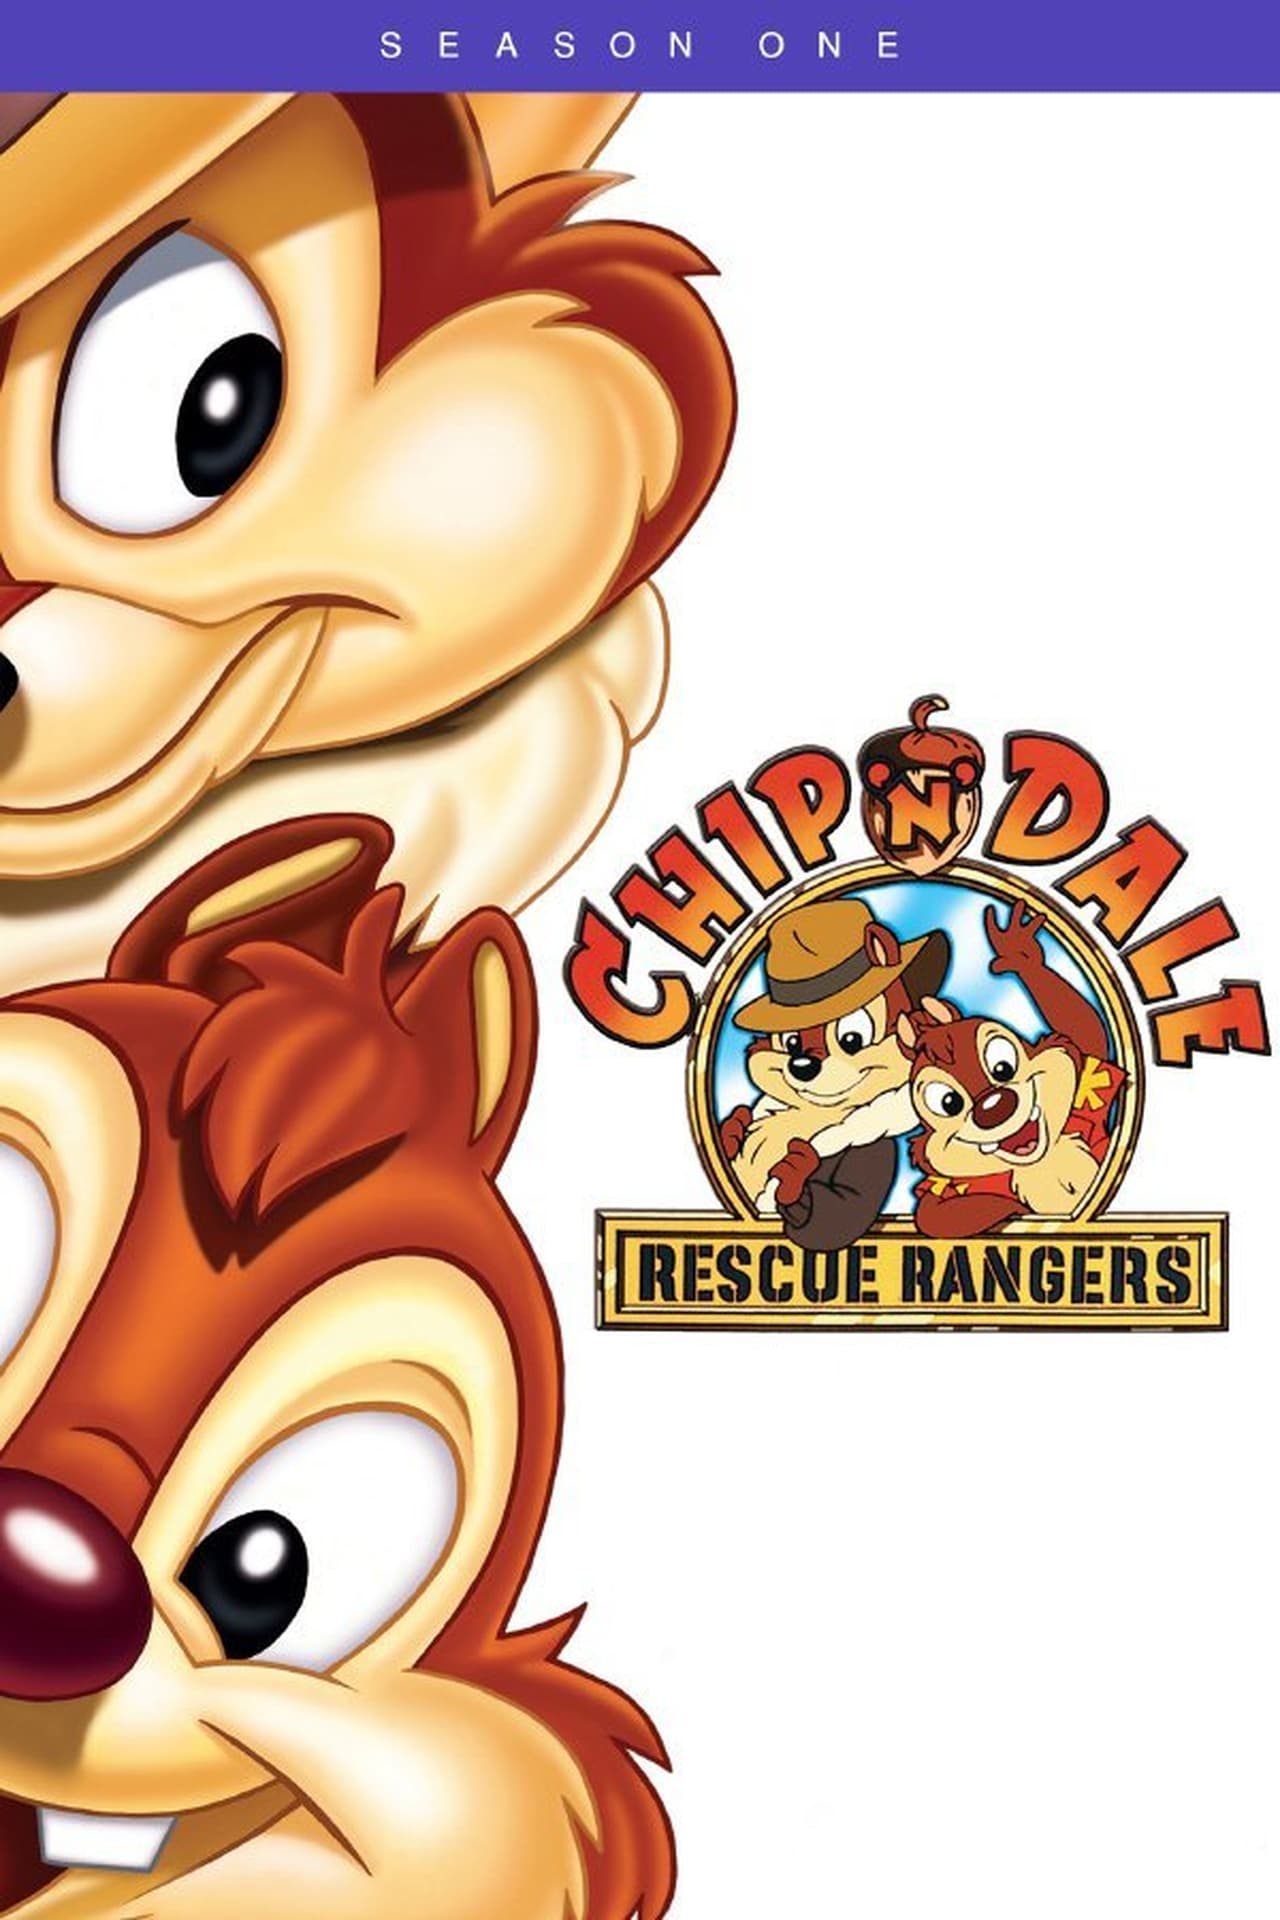 Chip 'n Dale Rescue Rangers Season 1